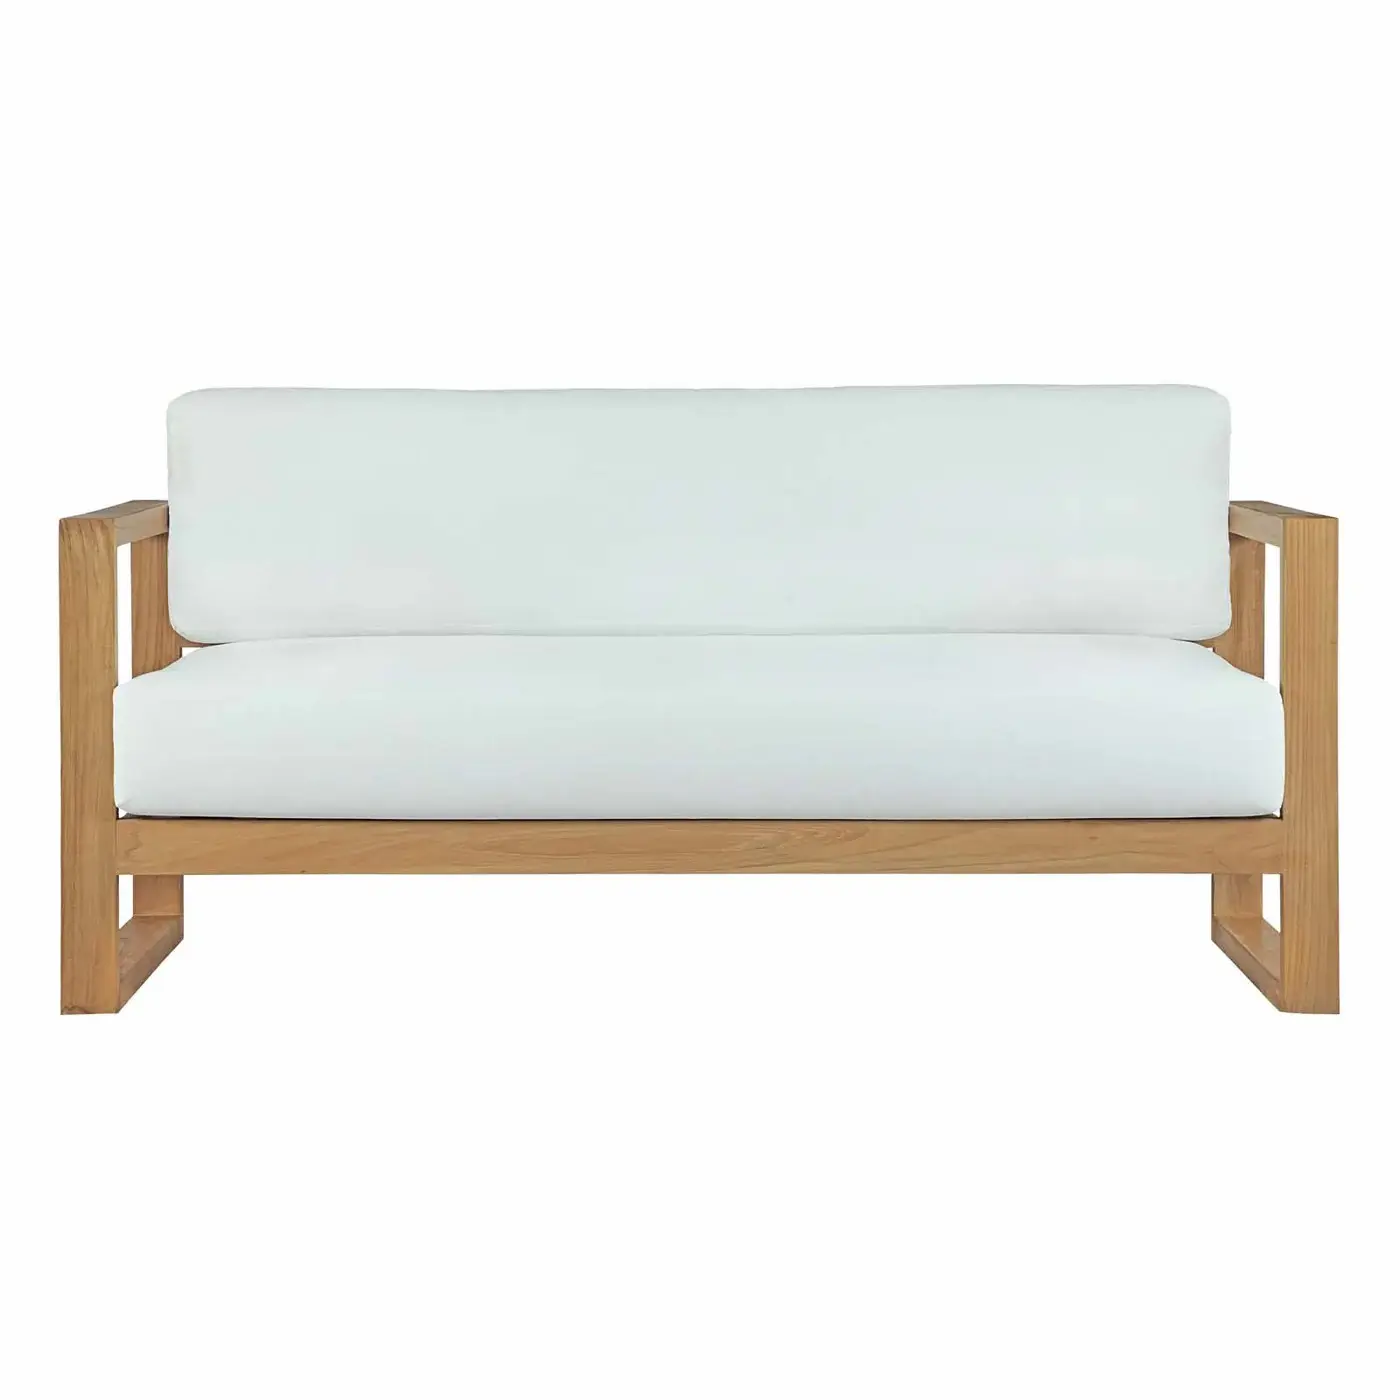 Furnitur Sofa Taman Terbuat dari Kayu Jati Solid dengan Bantal Sofa Warna Putih untuk Furnitur Luar Ruangan dan Furnitur Hotel